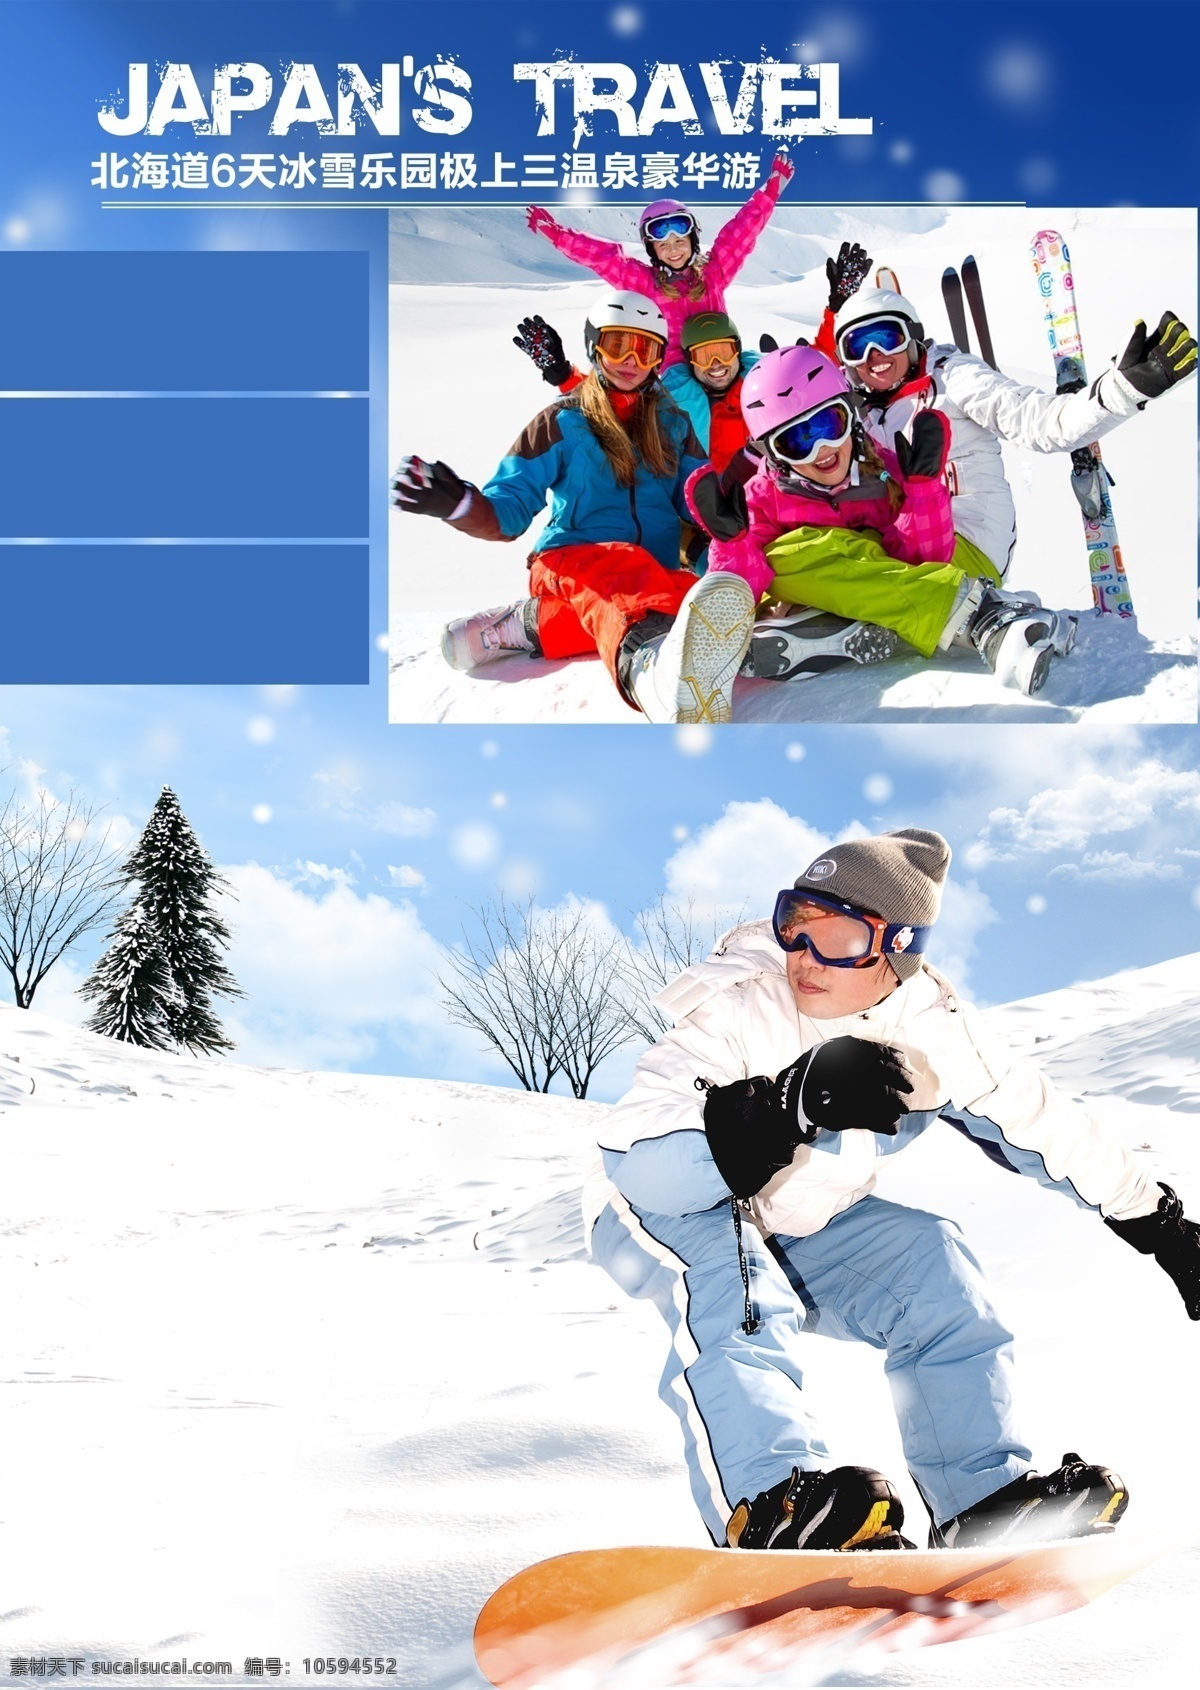 北海道 天 冰雪 乐园 极 上三 温泉 豪华游 日本 冬季 旅游 大气 玩雪